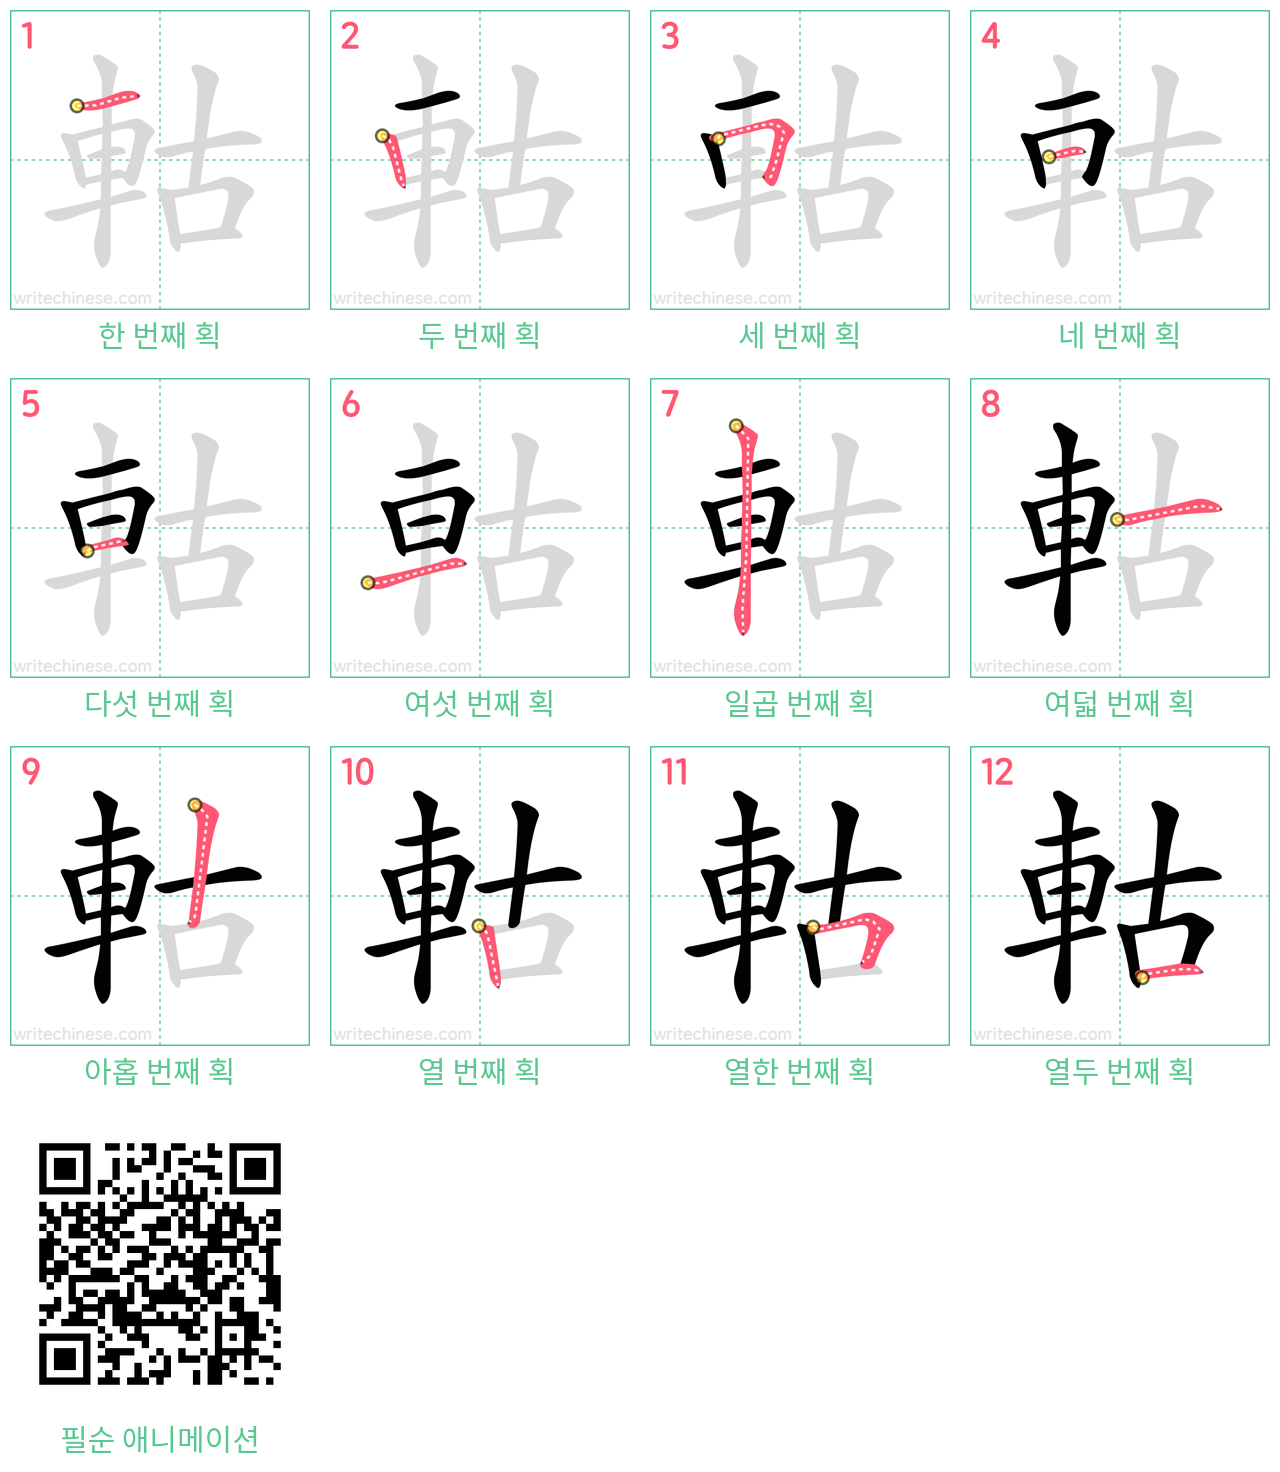 軲 step-by-step stroke order diagrams